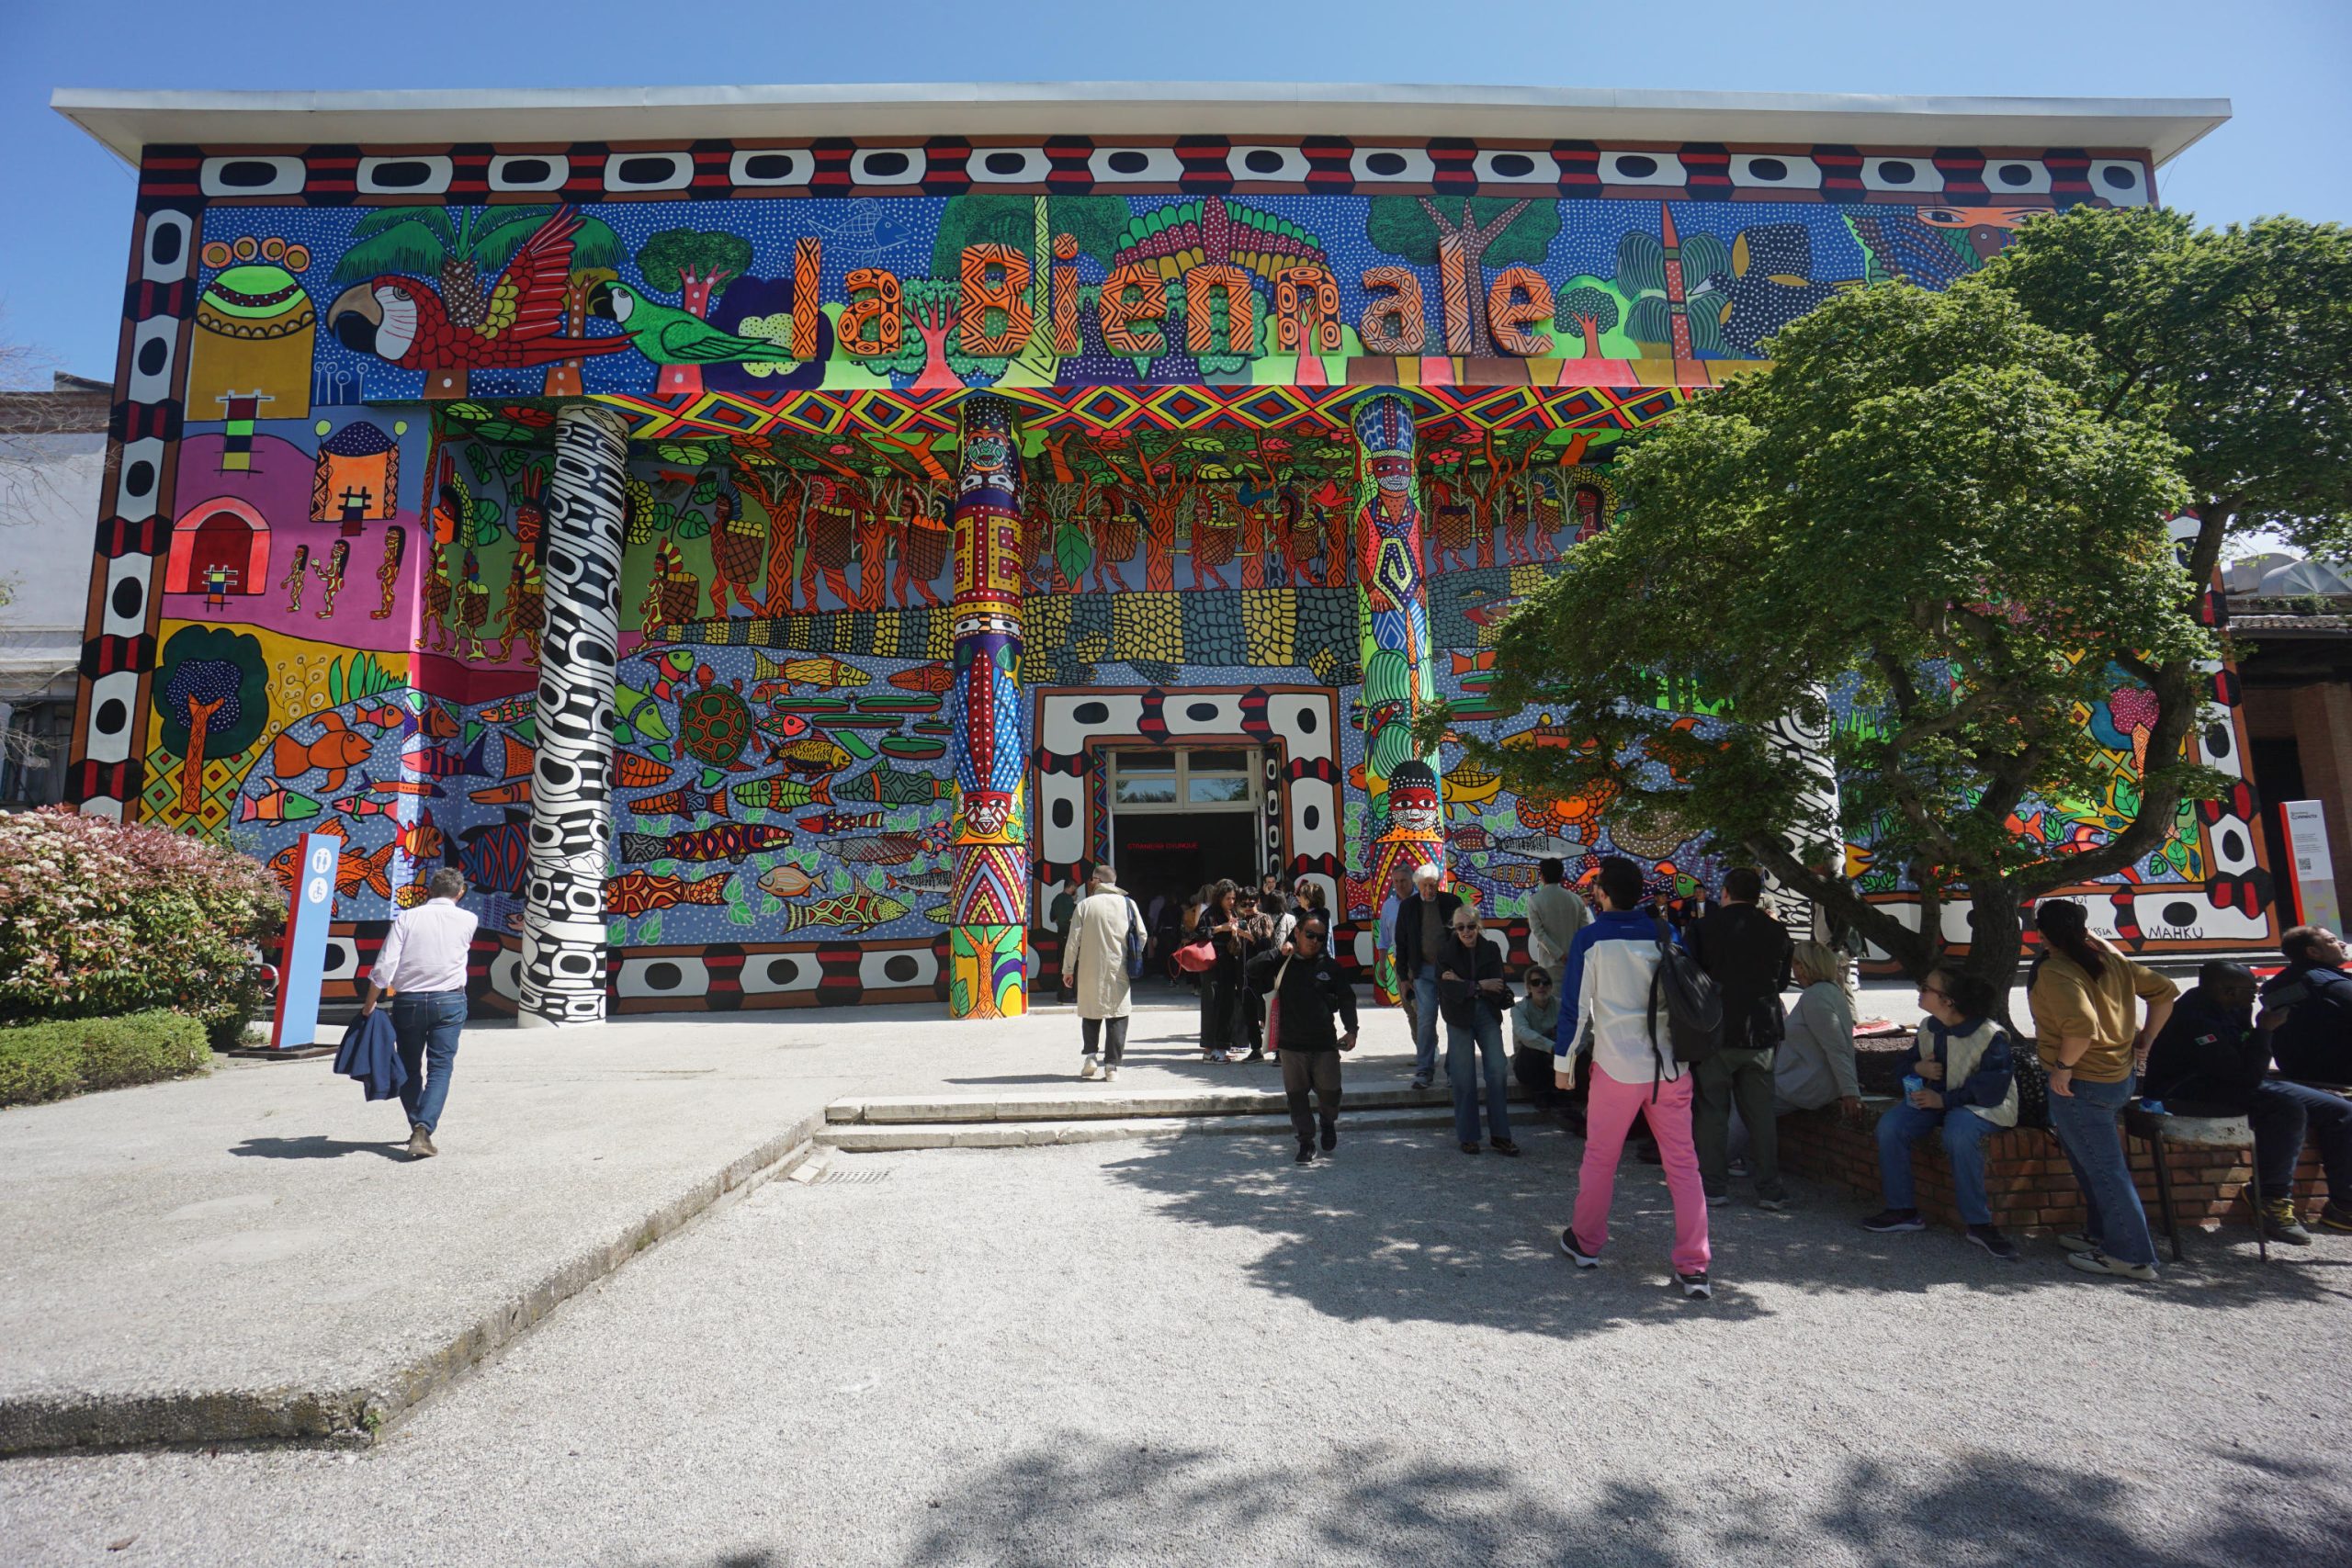 La Biennale Arte si svela, si è stranieri ovunque